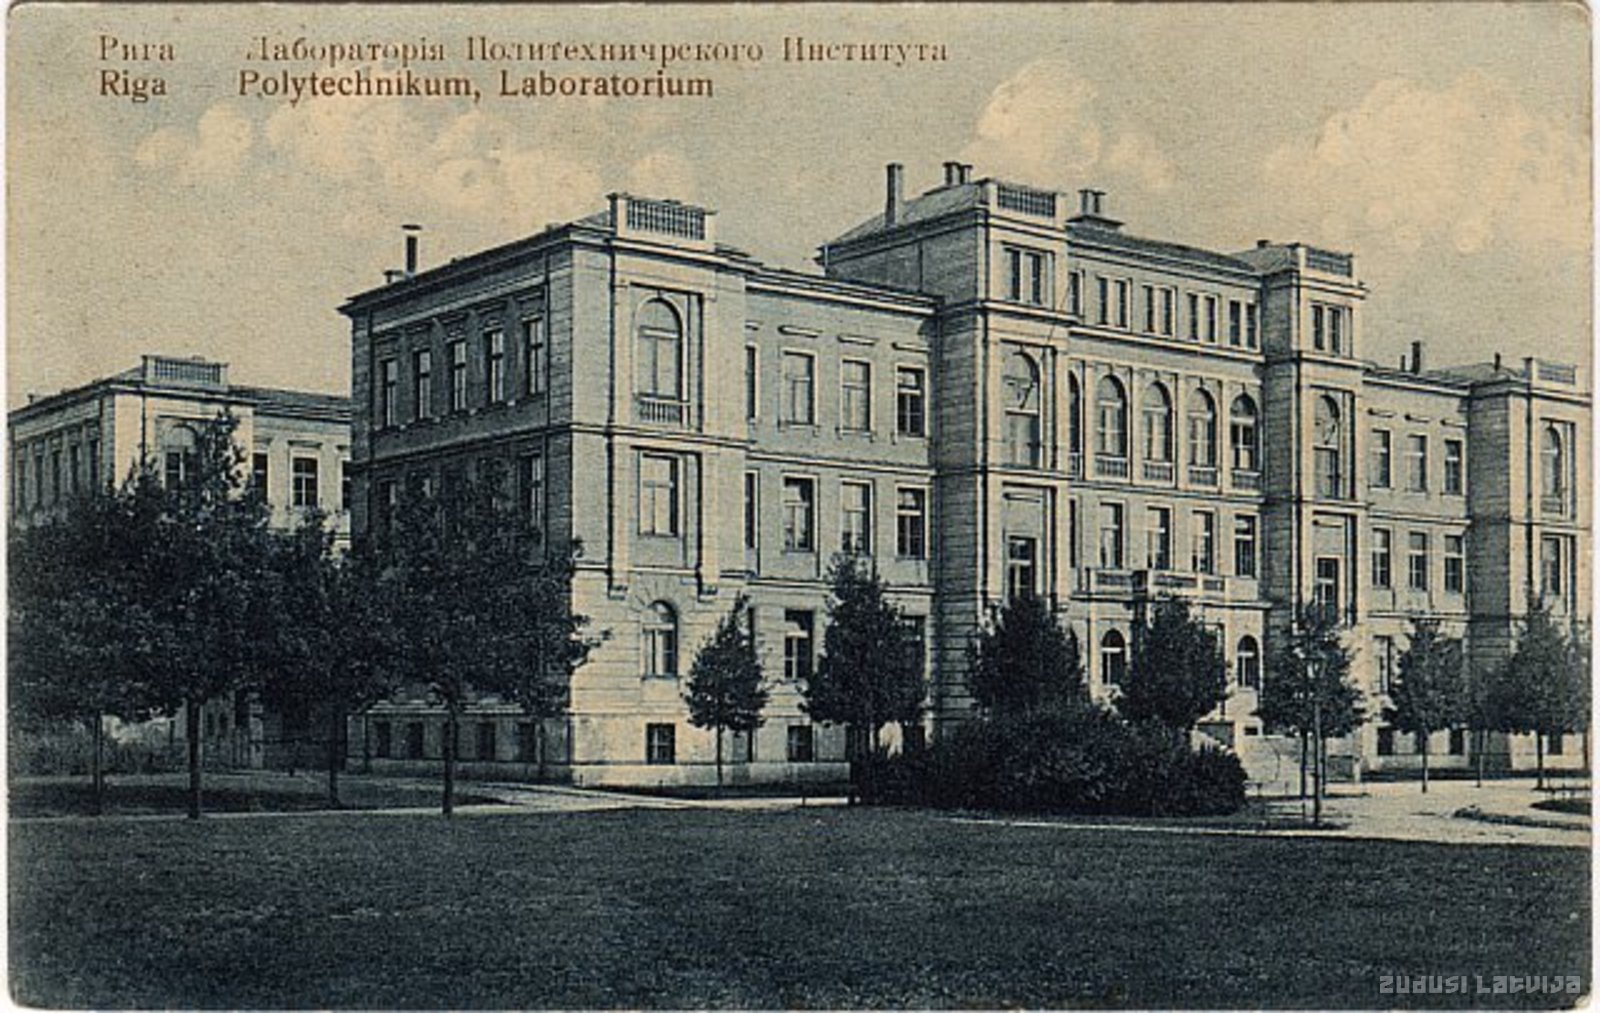 Riga. Laboratory of the Political Institute, Riga. Polytechnikum, Laboratory, Riga. Laboratory of Polytechnic Institute